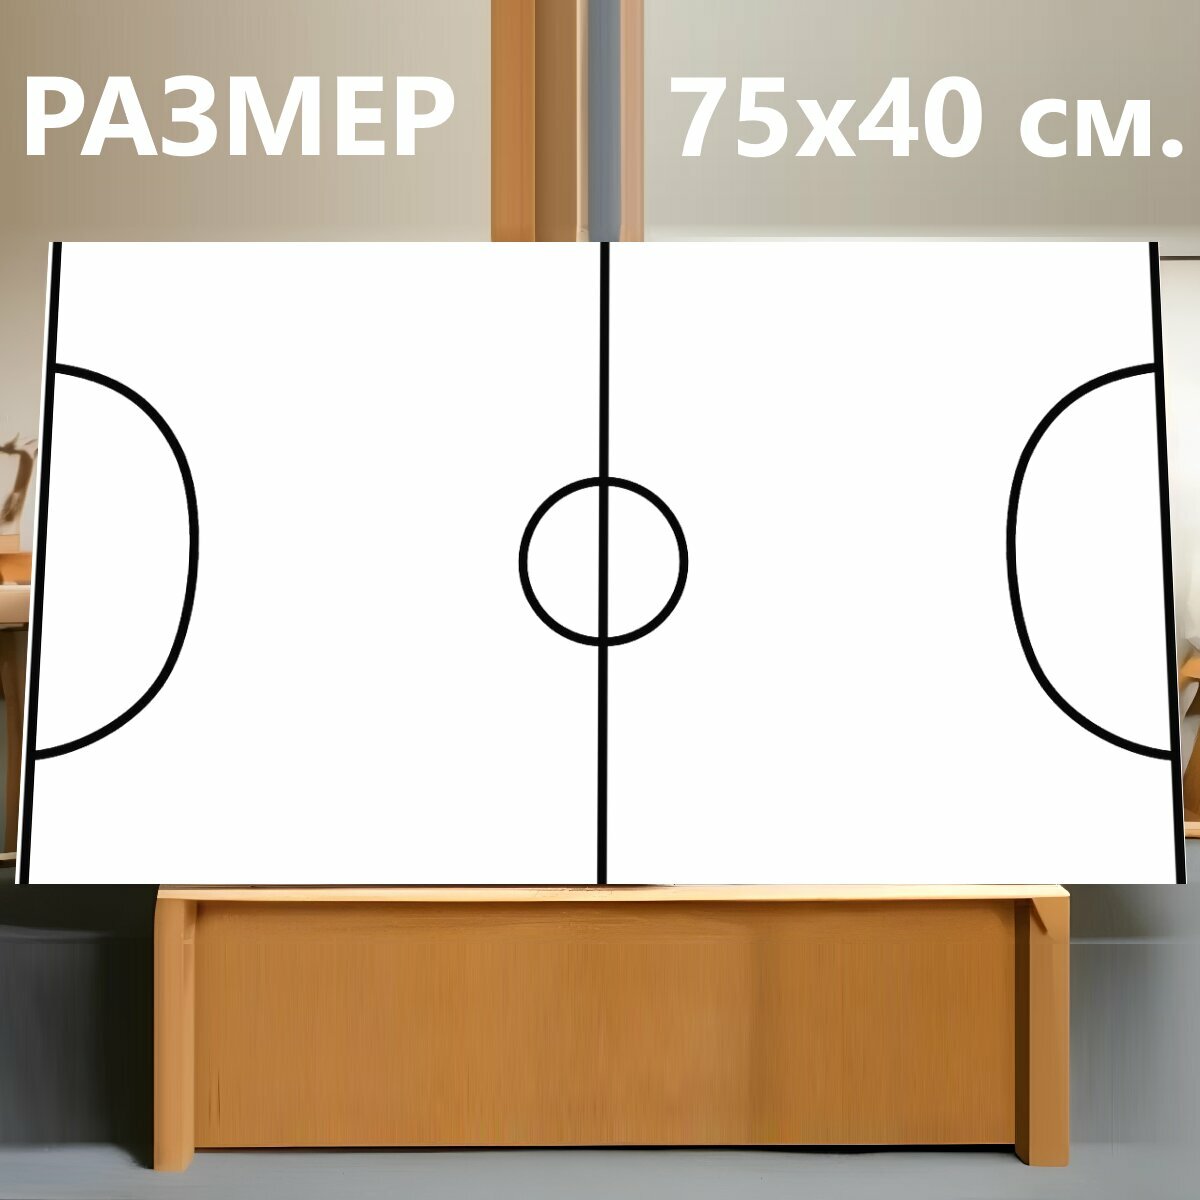 Картина на холсте "Футбольное поле, подача, футбол" на подрамнике 75х40 см. для интерьера